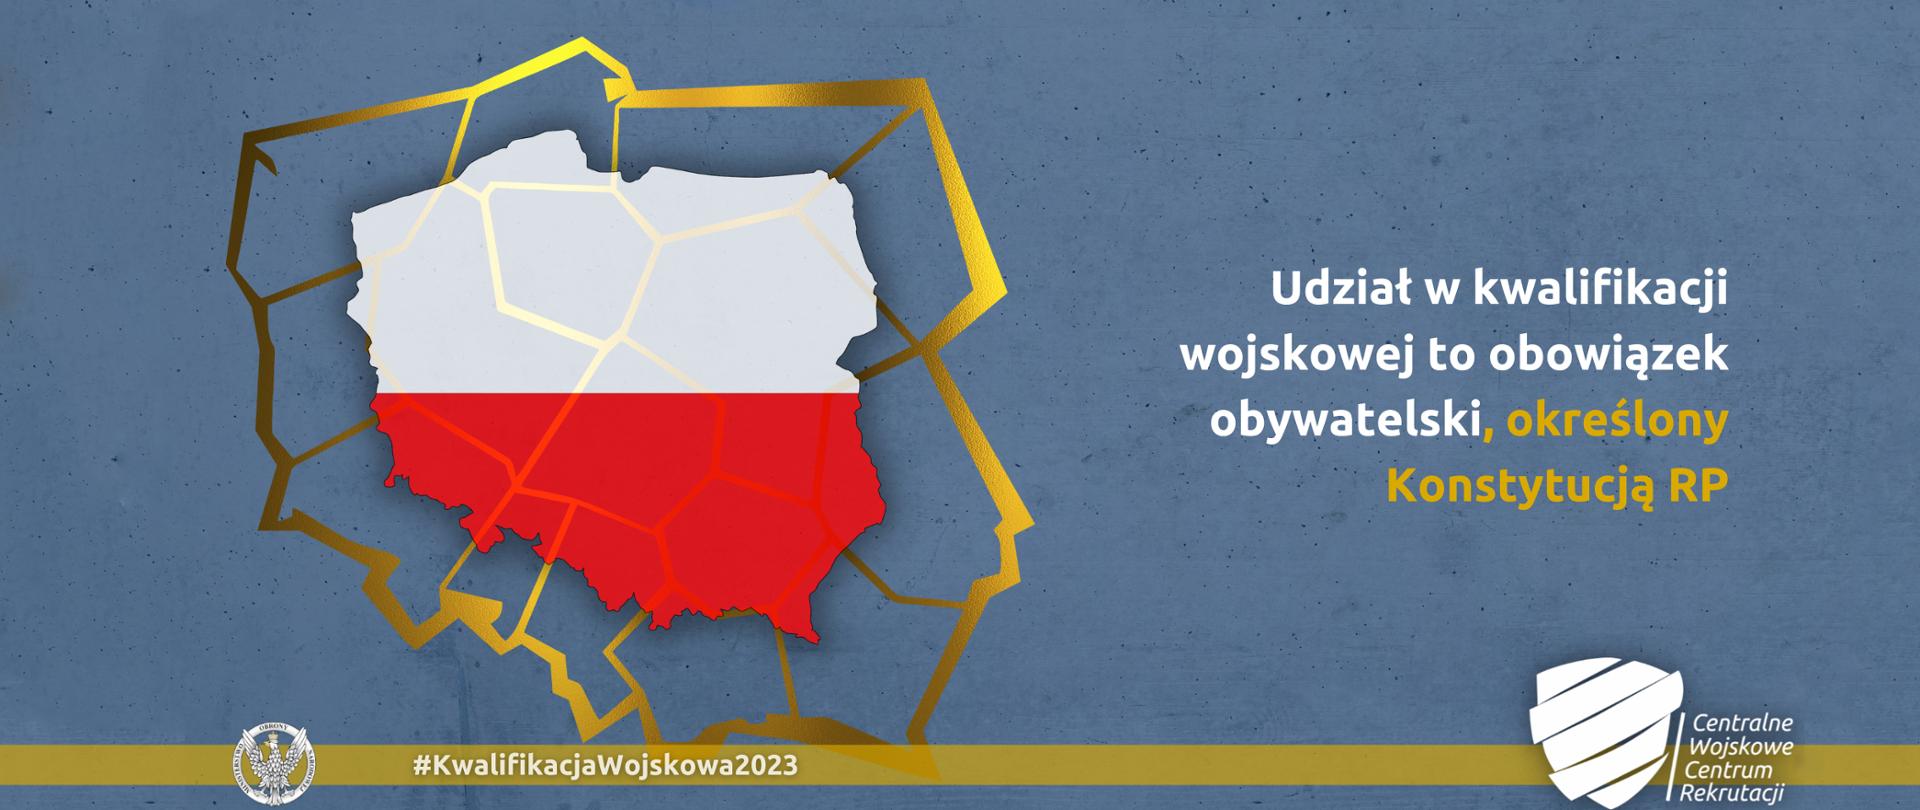 Mapa polski w biało czerwonych barwach, obok napis udział w kwalifikacji wojskowej to obowiązek obywatelski określony konstytucją RP, poniżej na złotym pasku logo CWKR.